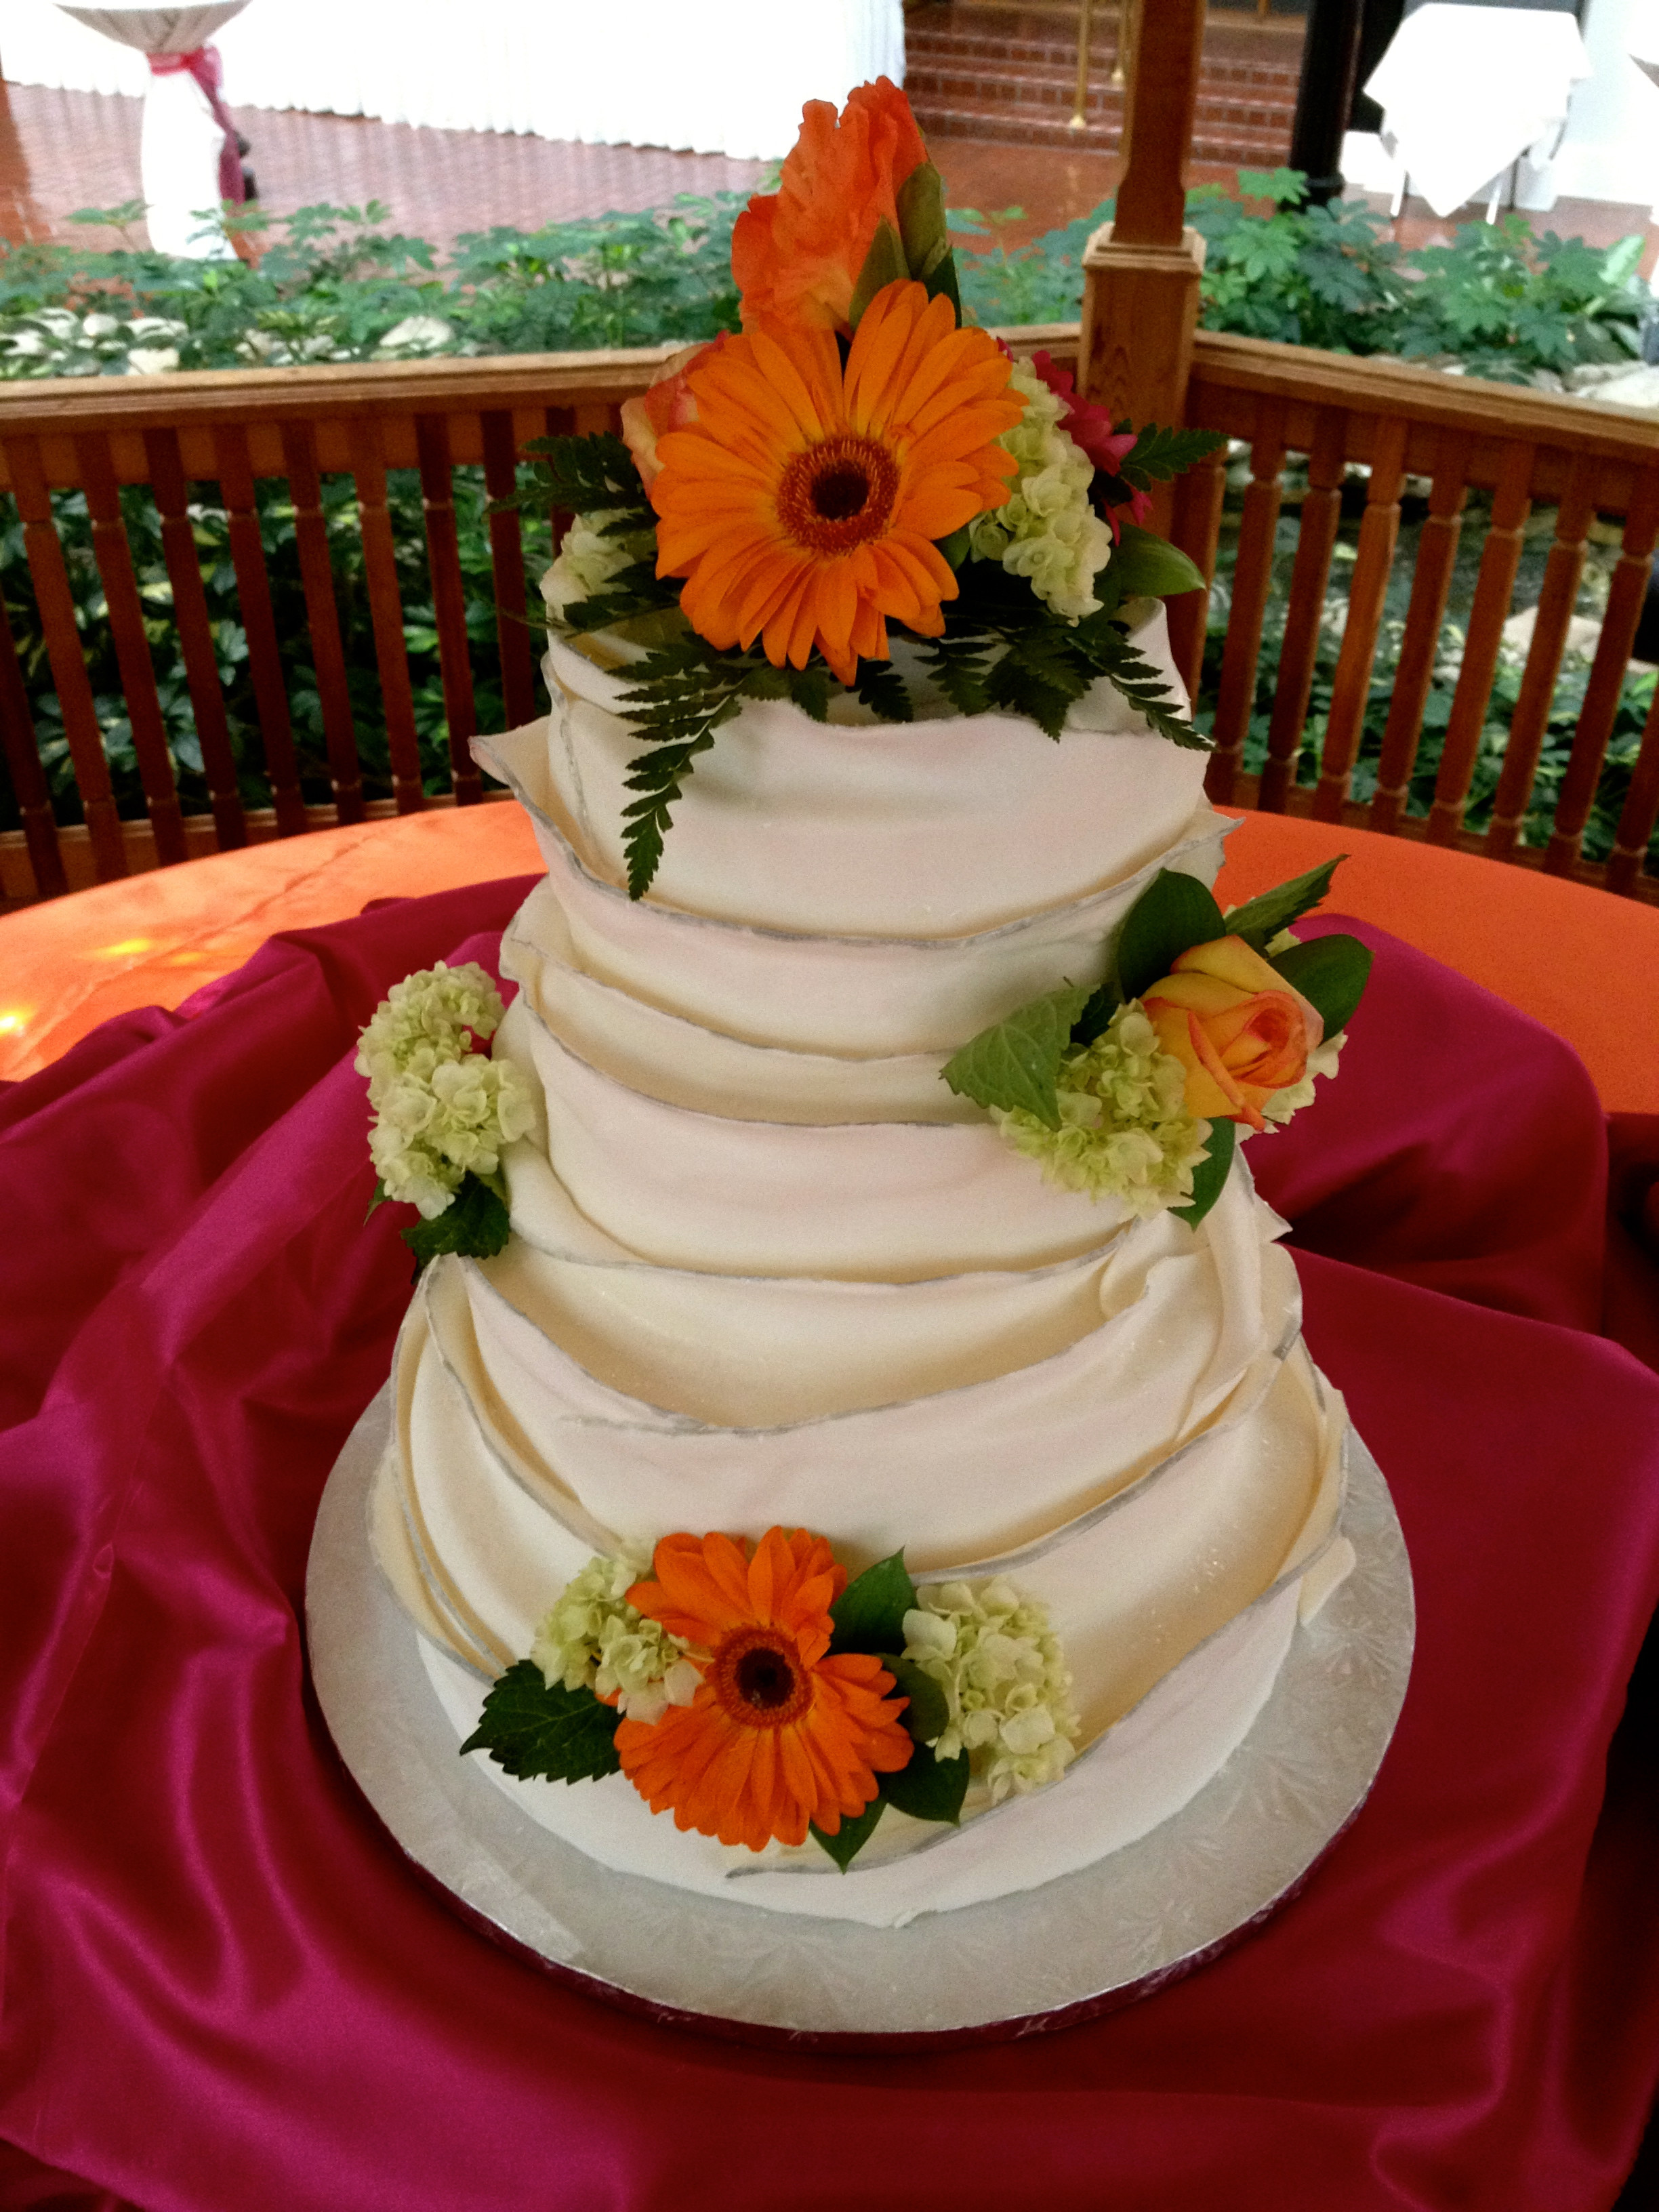 Wedding Cakes Buffalo Ny
 Wedding Cakes Cookie Patisserie & Bakery Buffalo NY